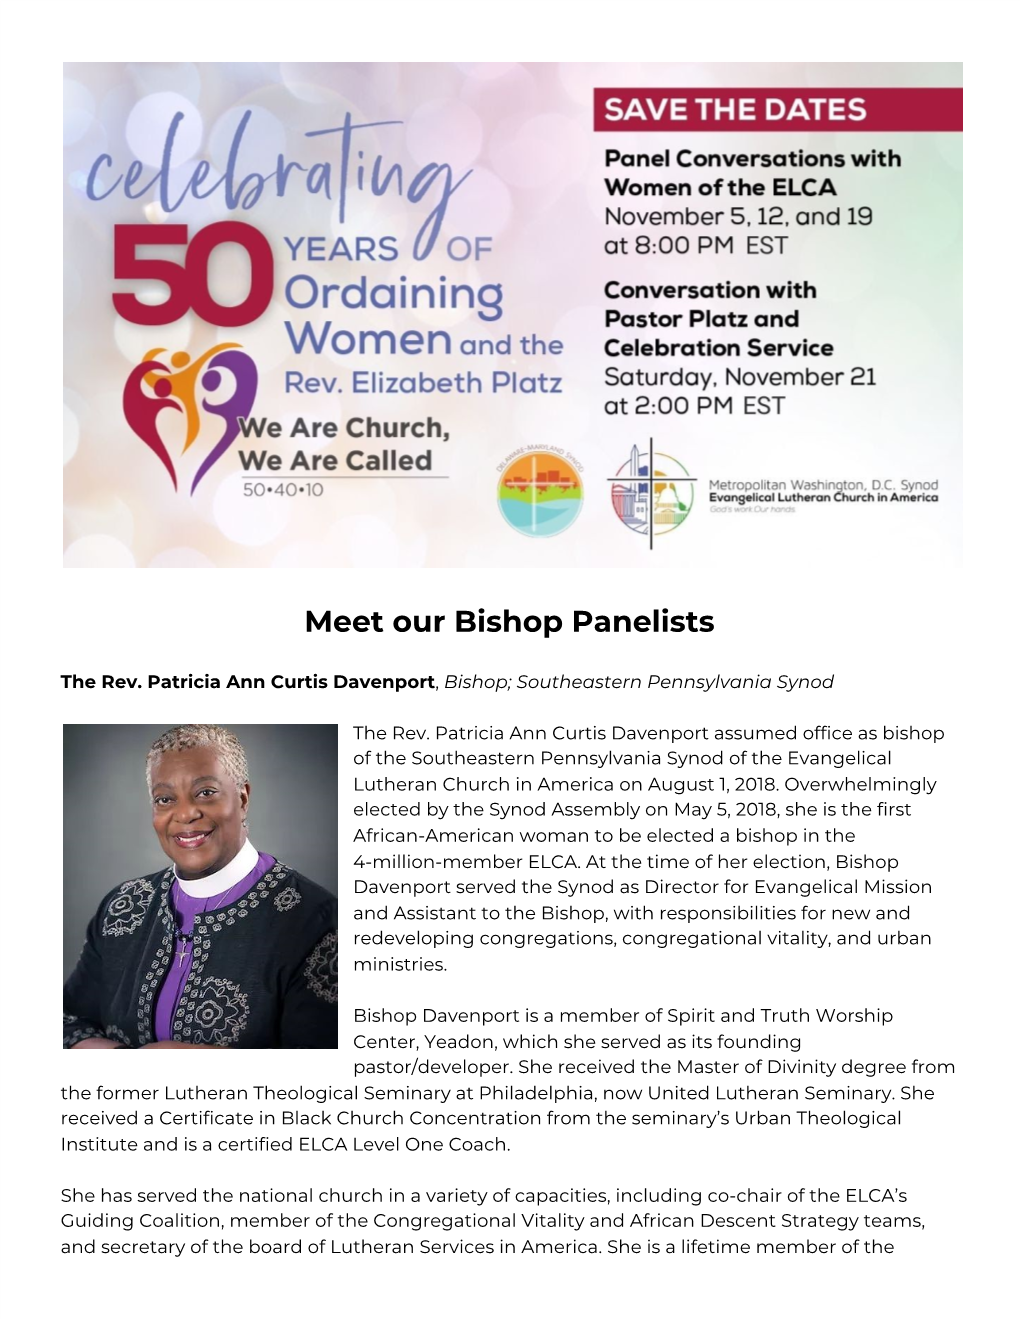 Meet Our Bishop Panelists